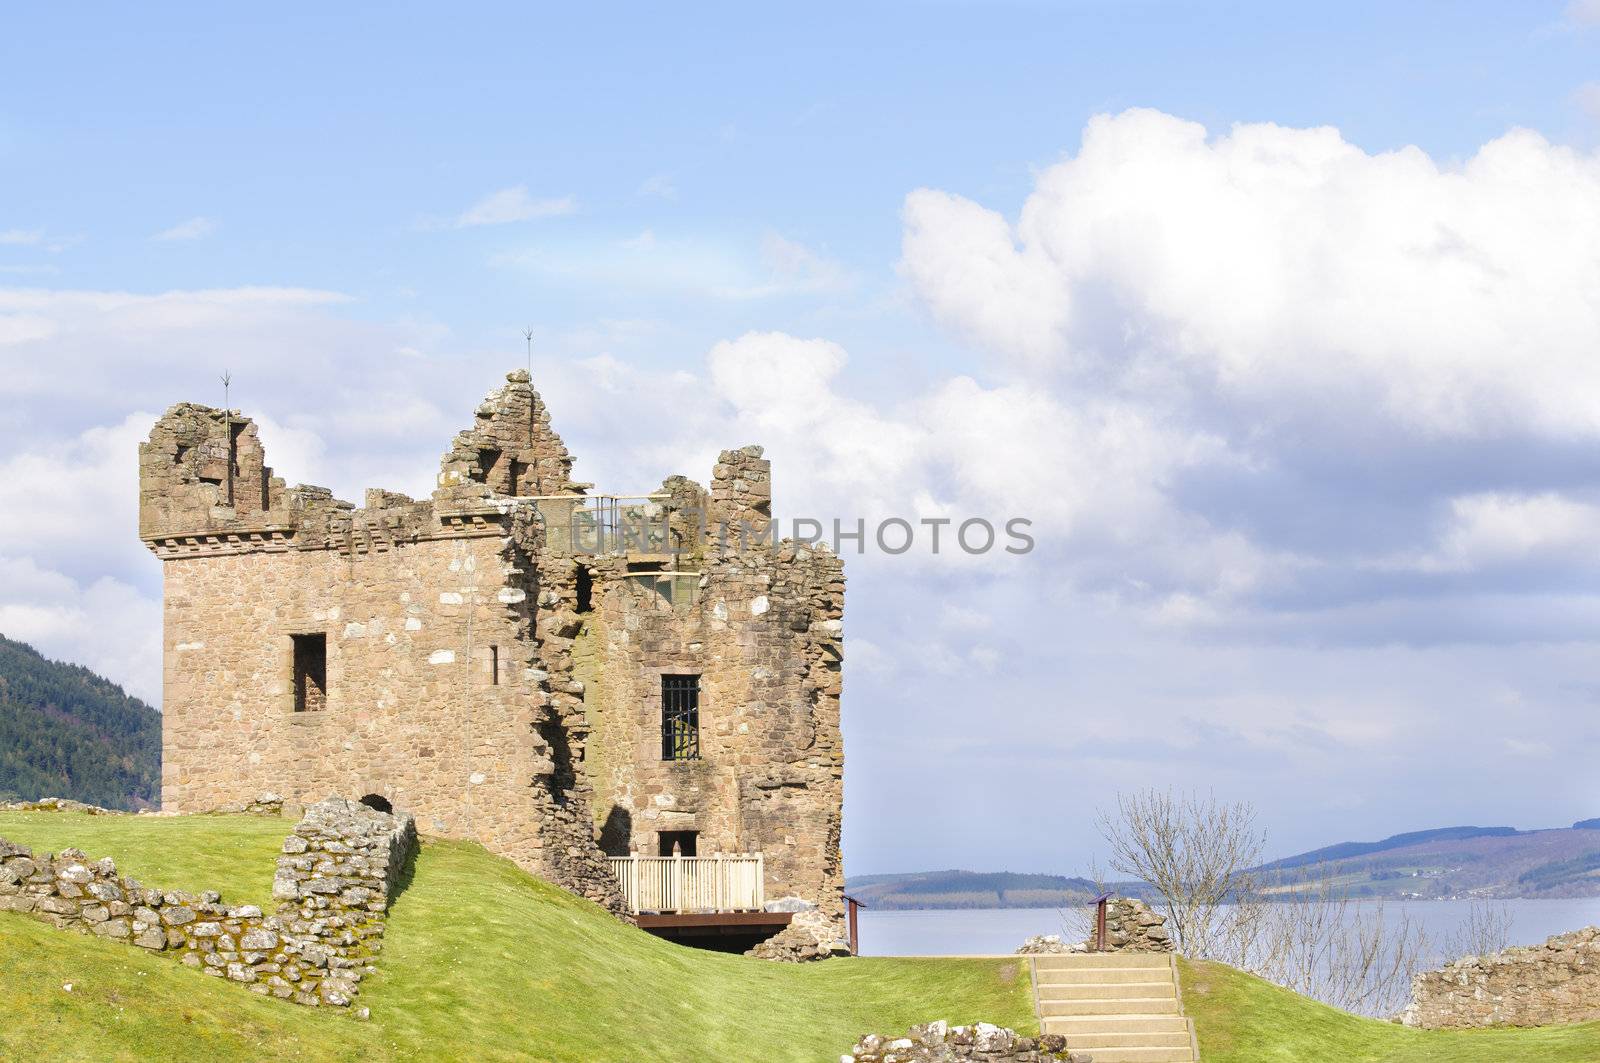 Urquhart Castle on Loch Ness in Scotland  by jeffbanke